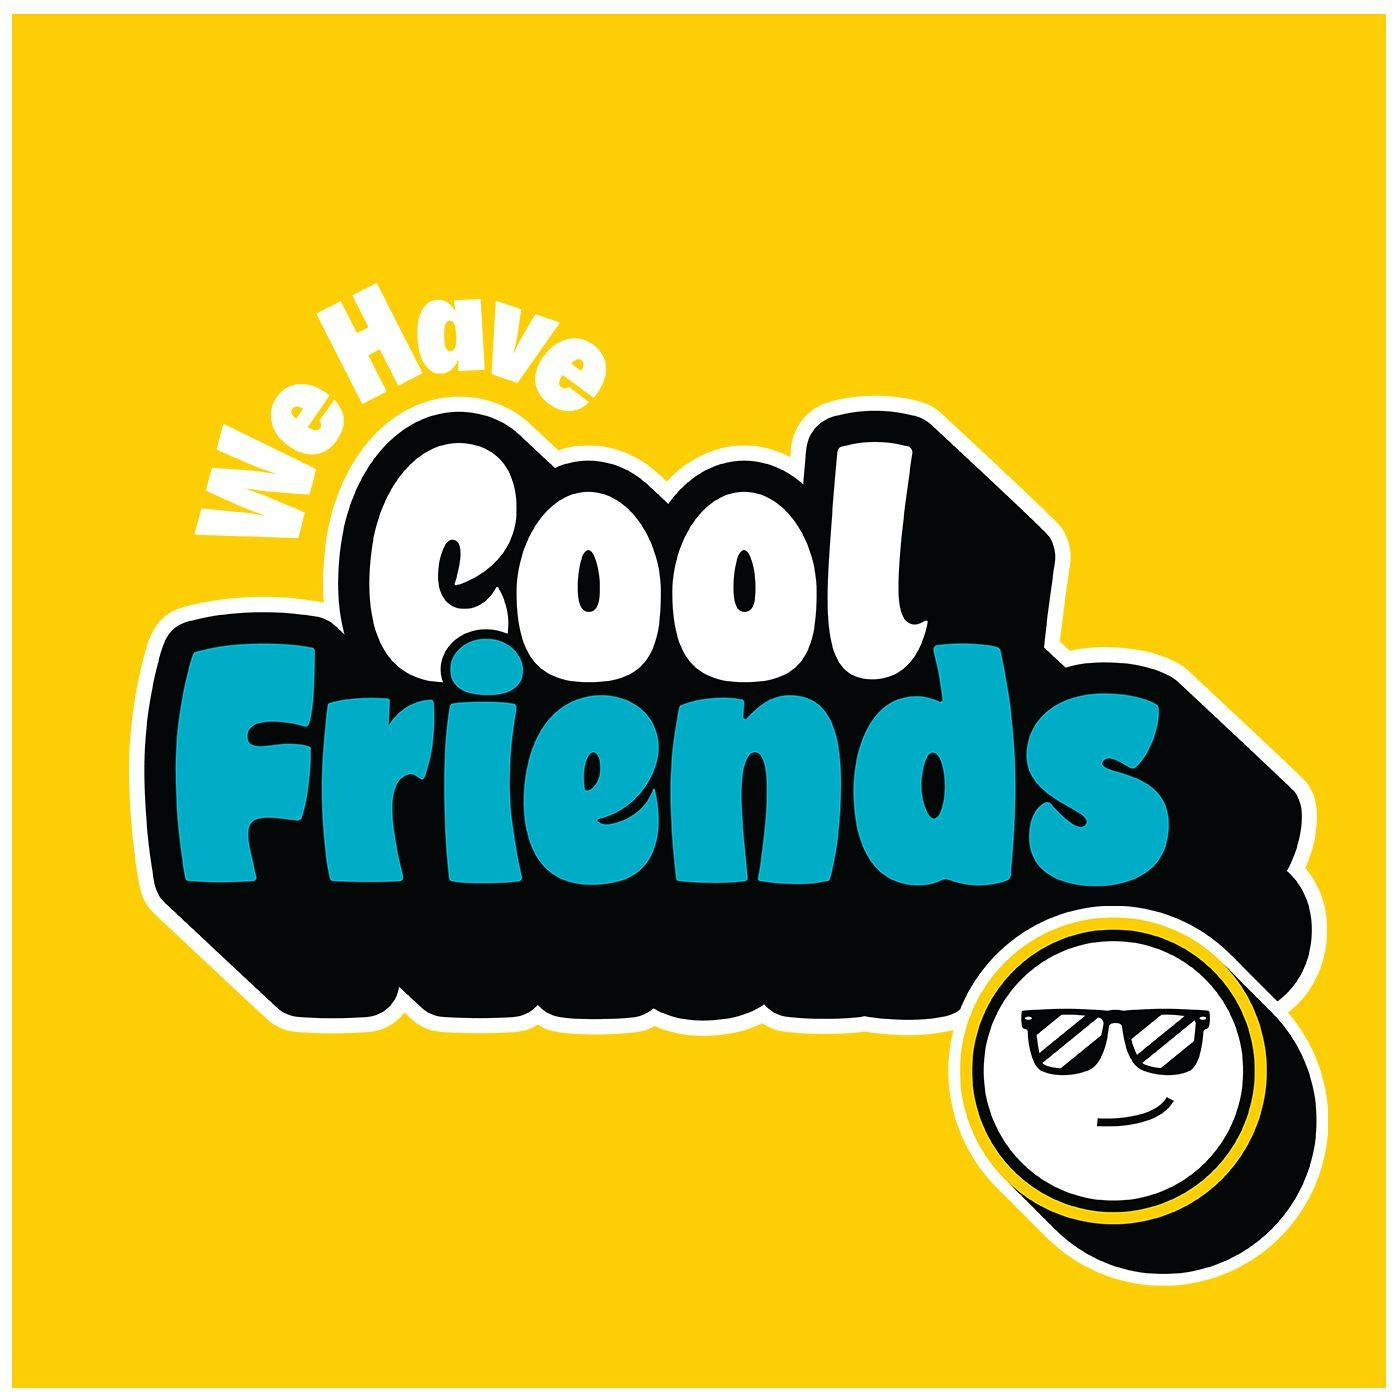 Jack Pattillo - We Have Cool Friends